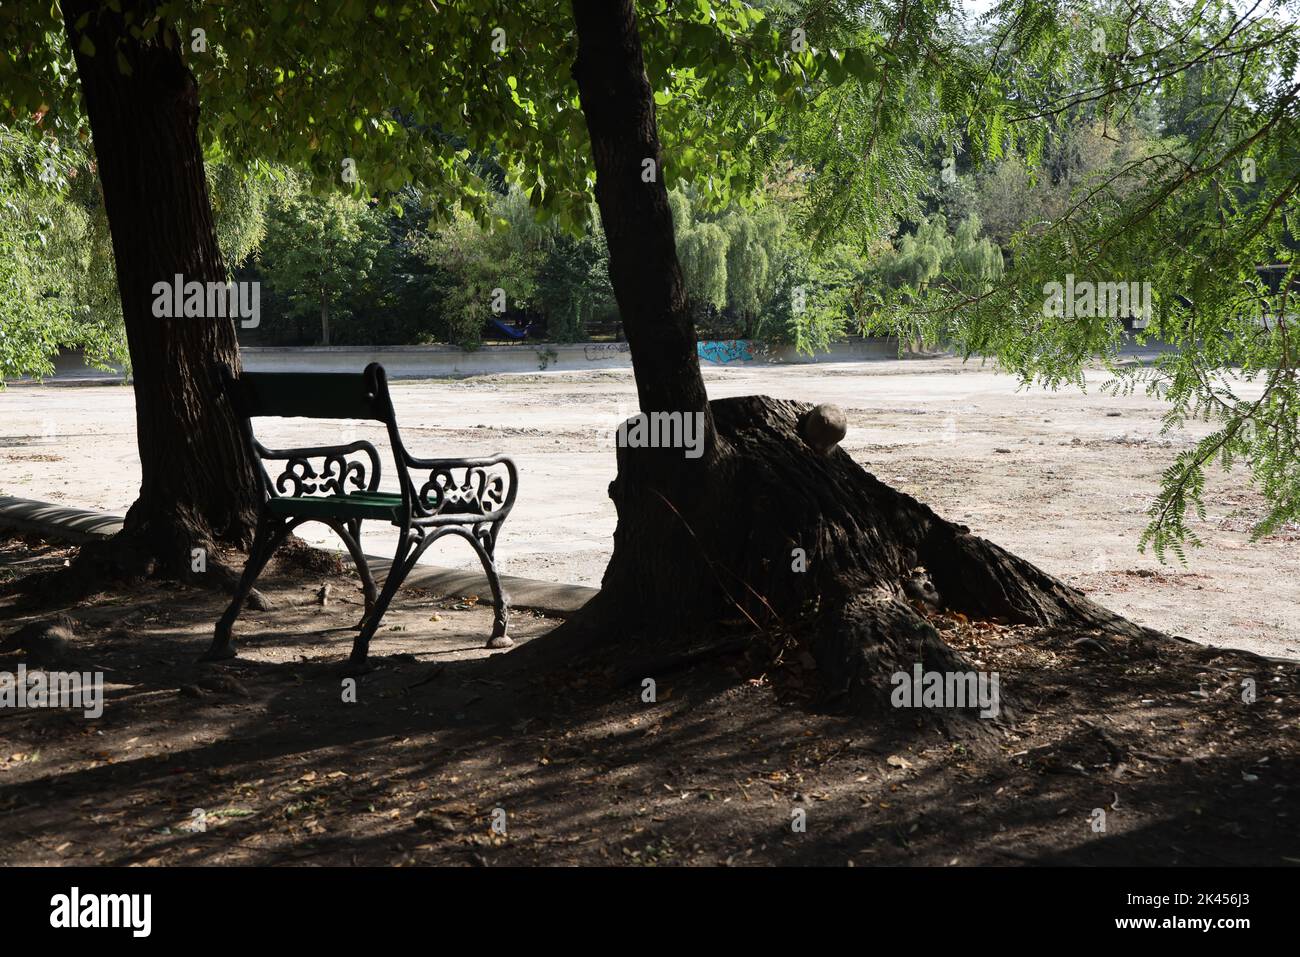 Solitario banco vacío en el parque de Cișmigiu, Bucarest, Rumania, entre árboles mirando hacia fuera sobre un estanque seco, vacío sin agua Foto de stock